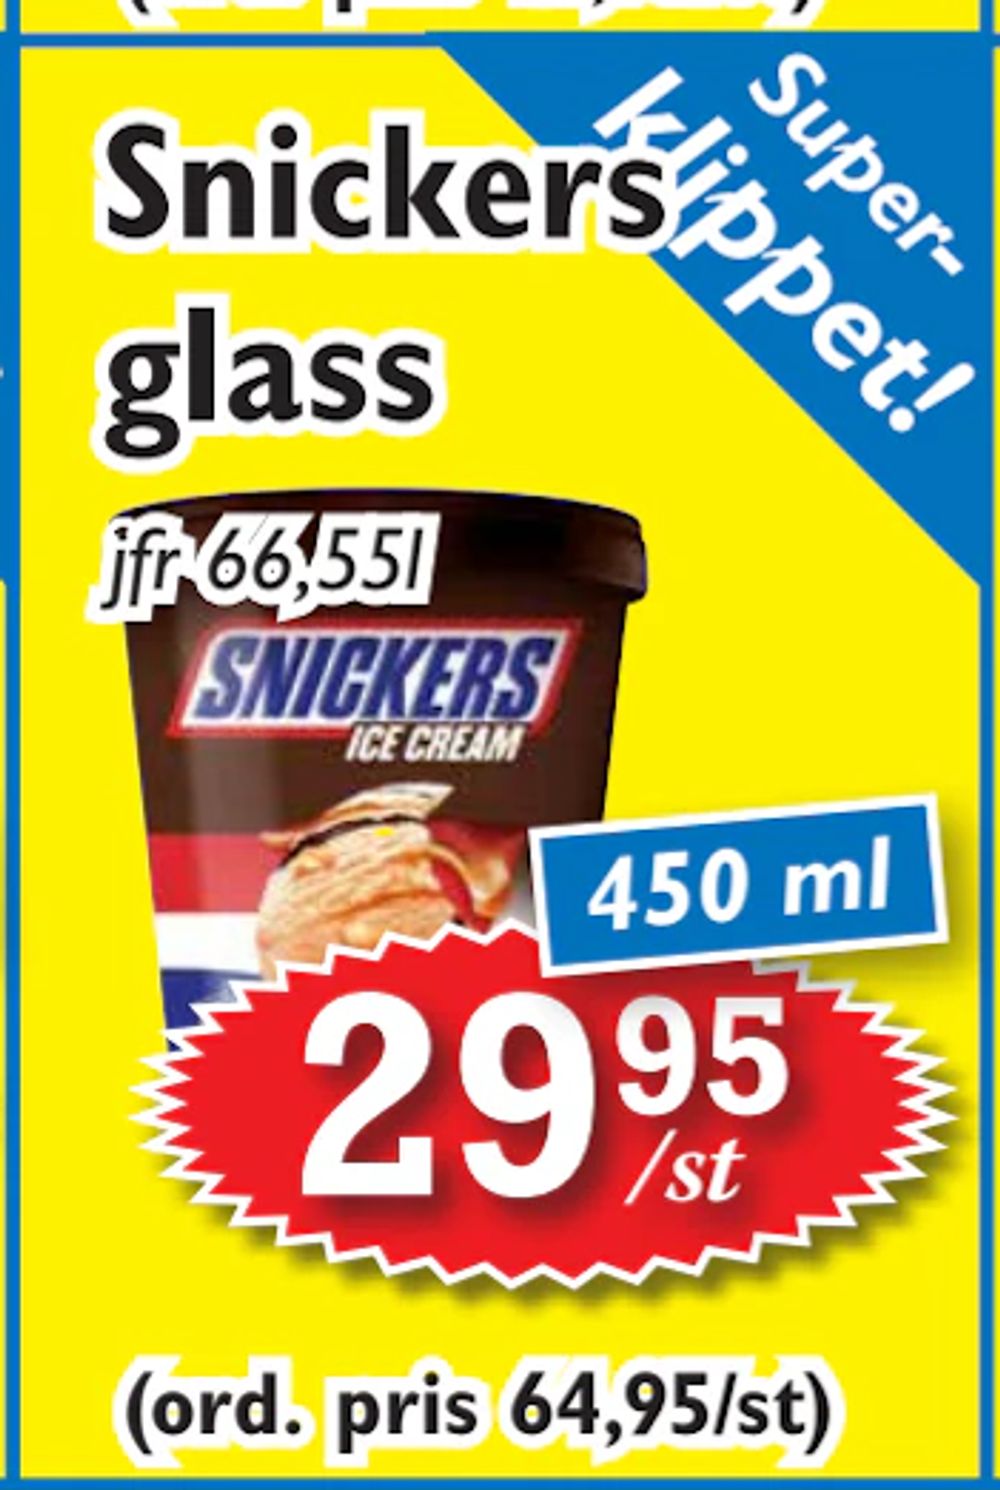 Erbjudanden på Snickers glass från T-jarlen för 29,95 kr